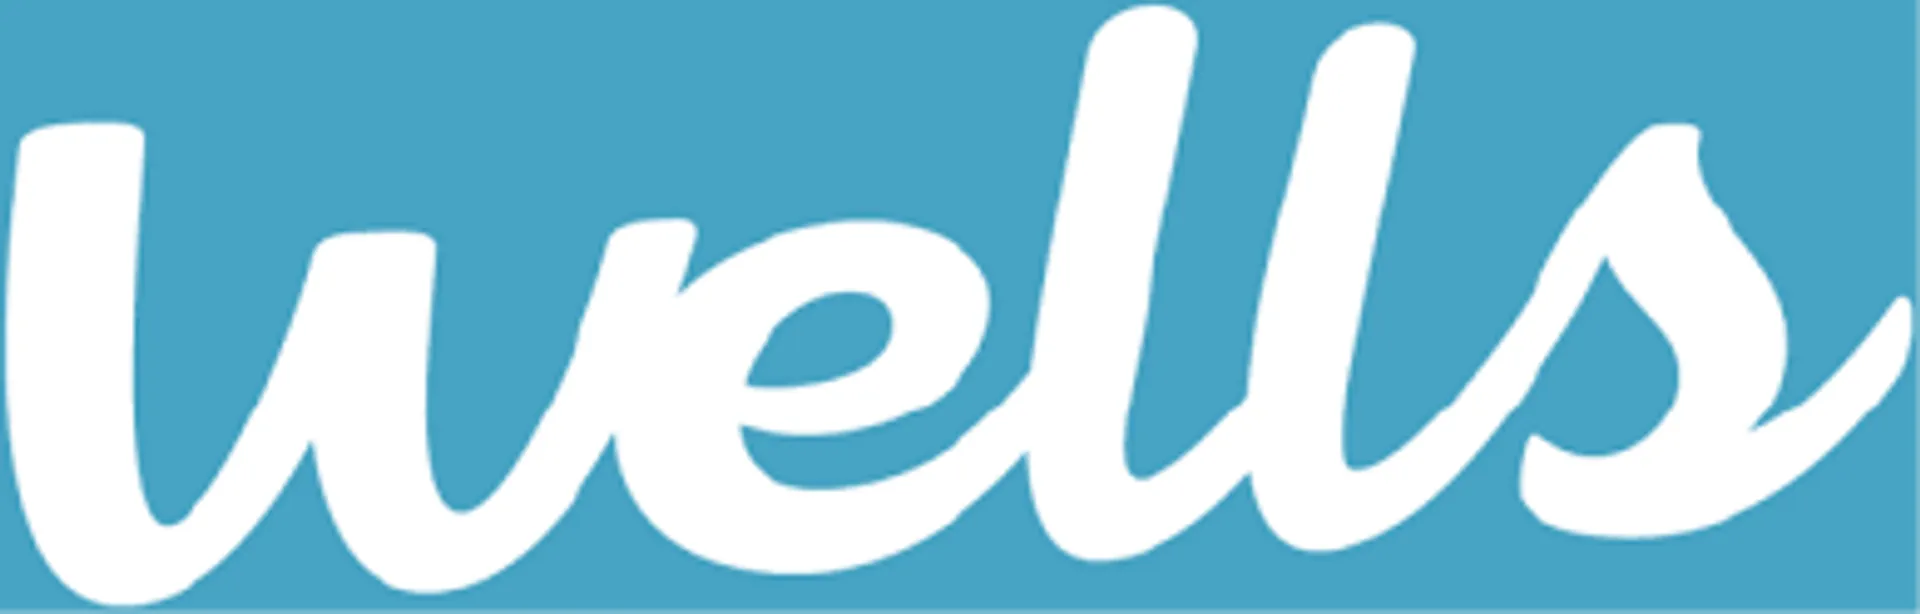 Well’s logo